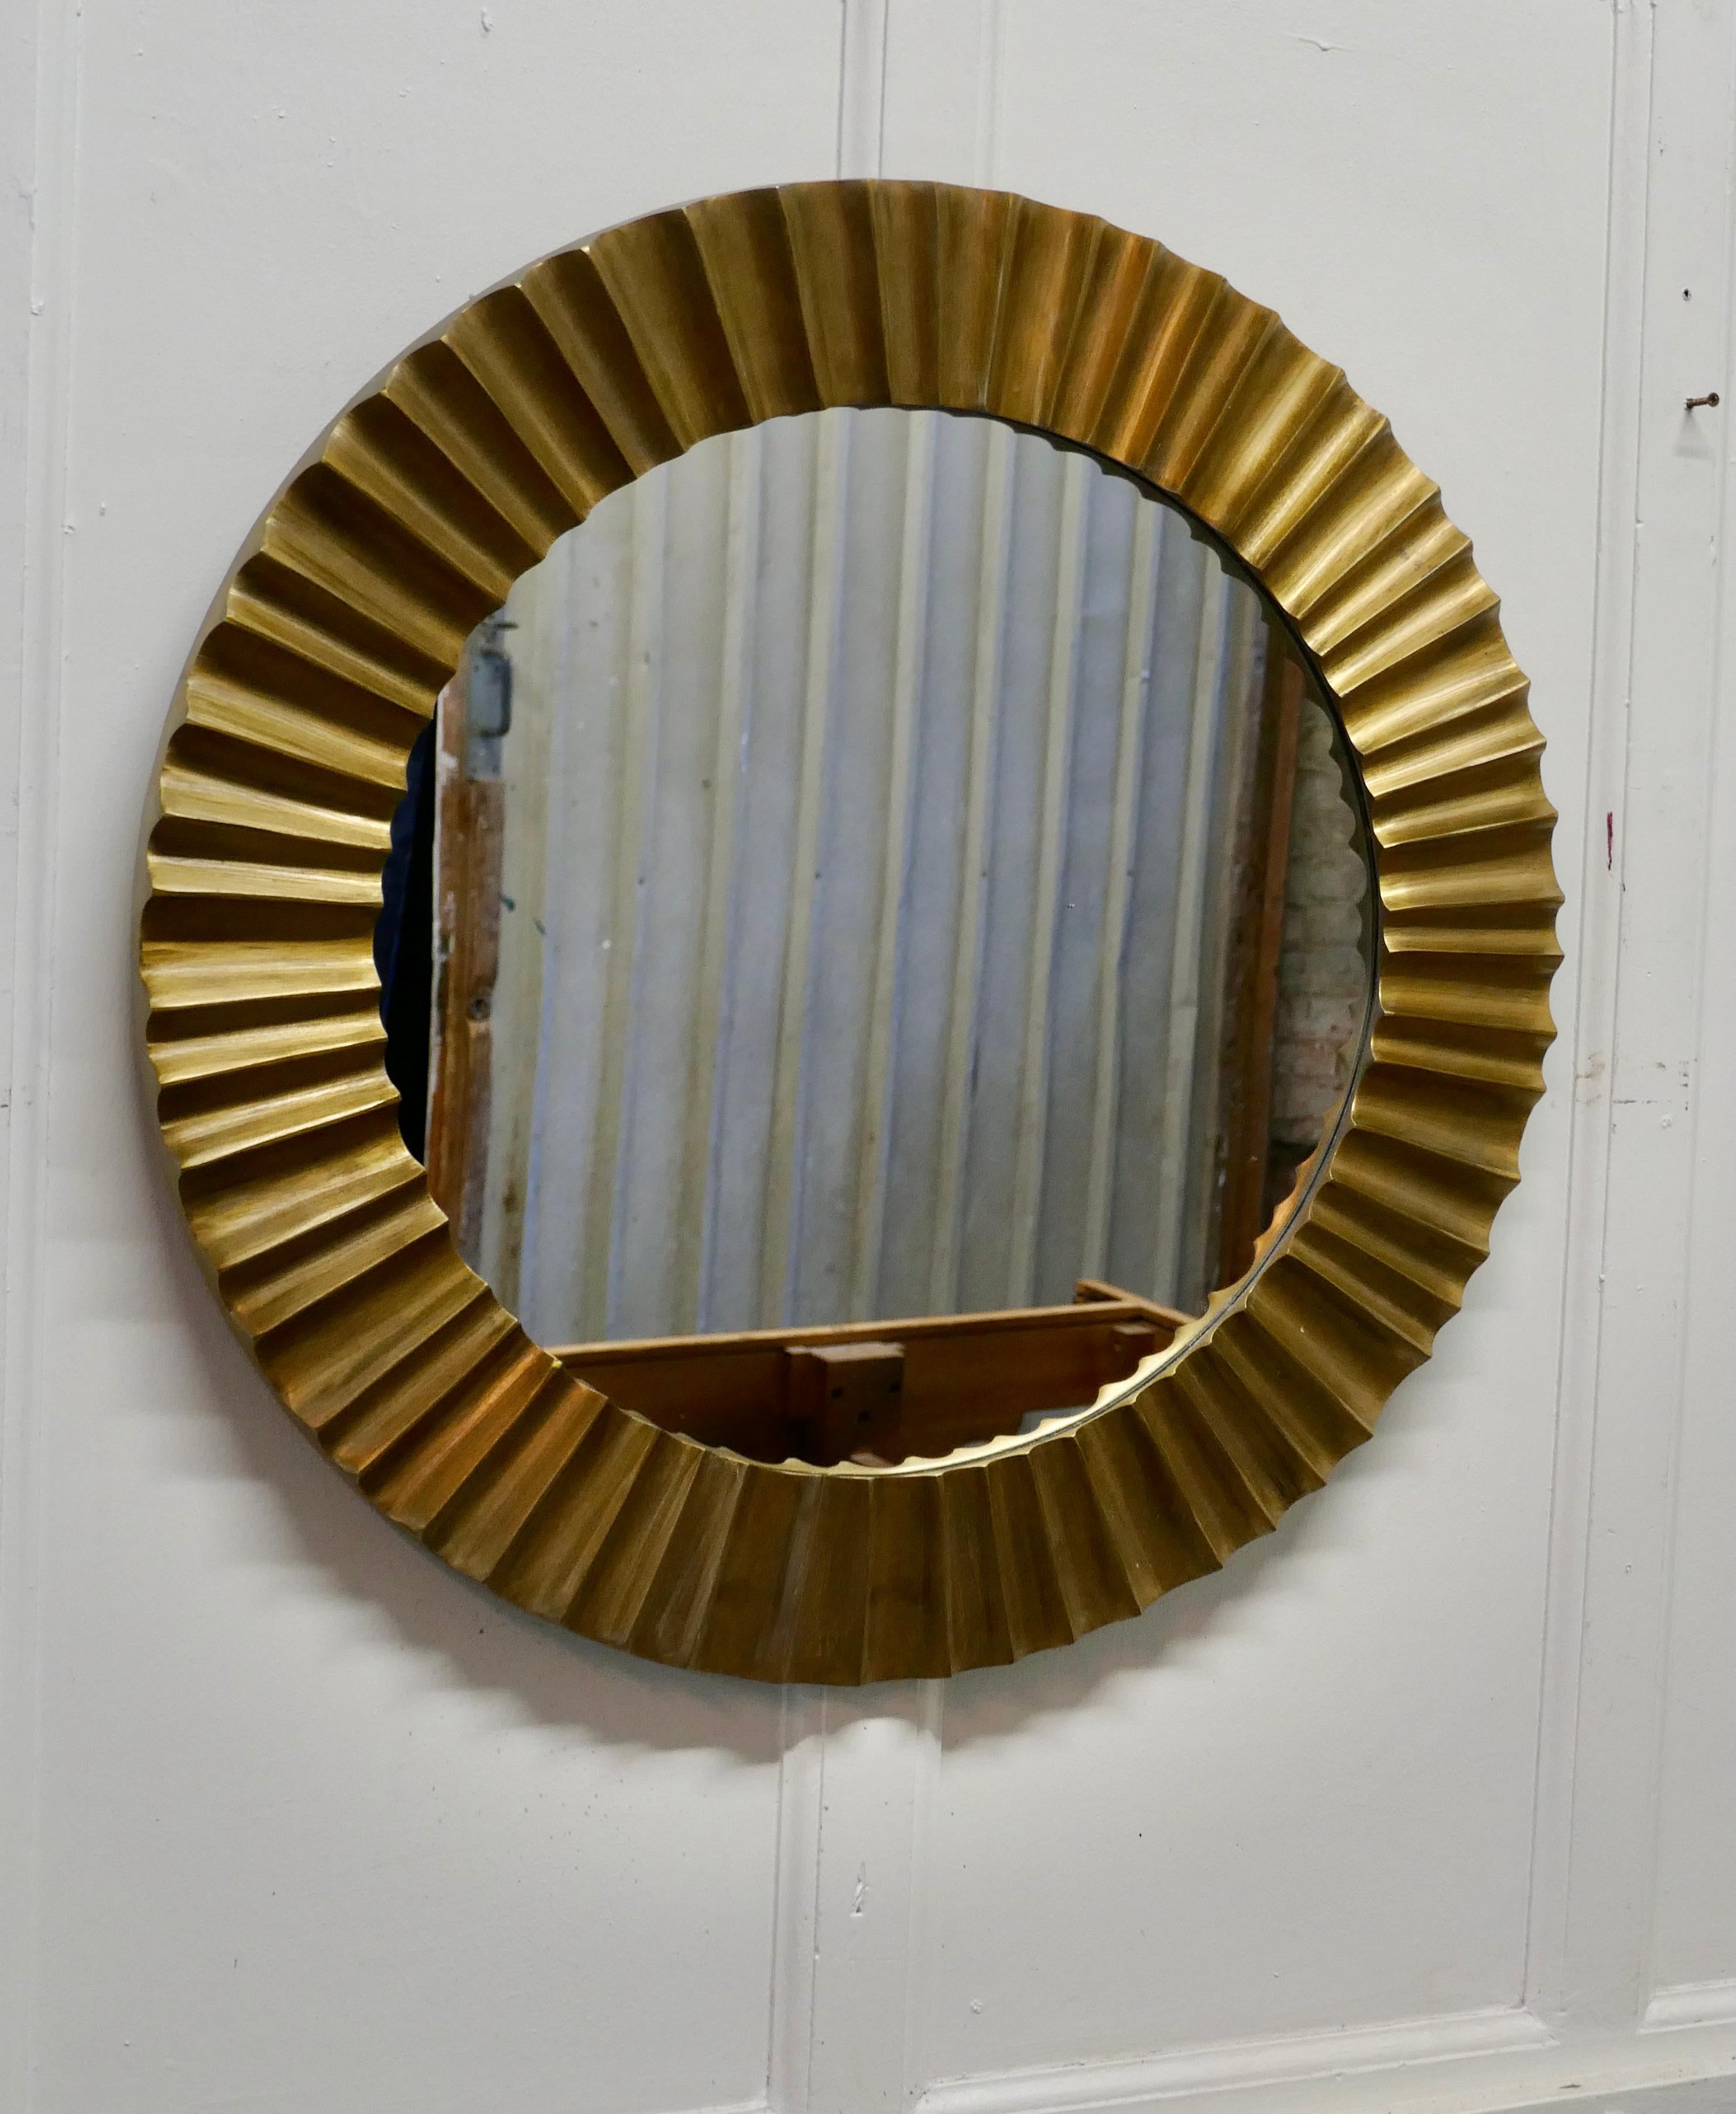 Schweres Messing Art Deco Odeon Sonnenschliff Spiegel

Ein hervorragendes Stück, im letzten Jahrhundert gemacht, der Spiegel 4 